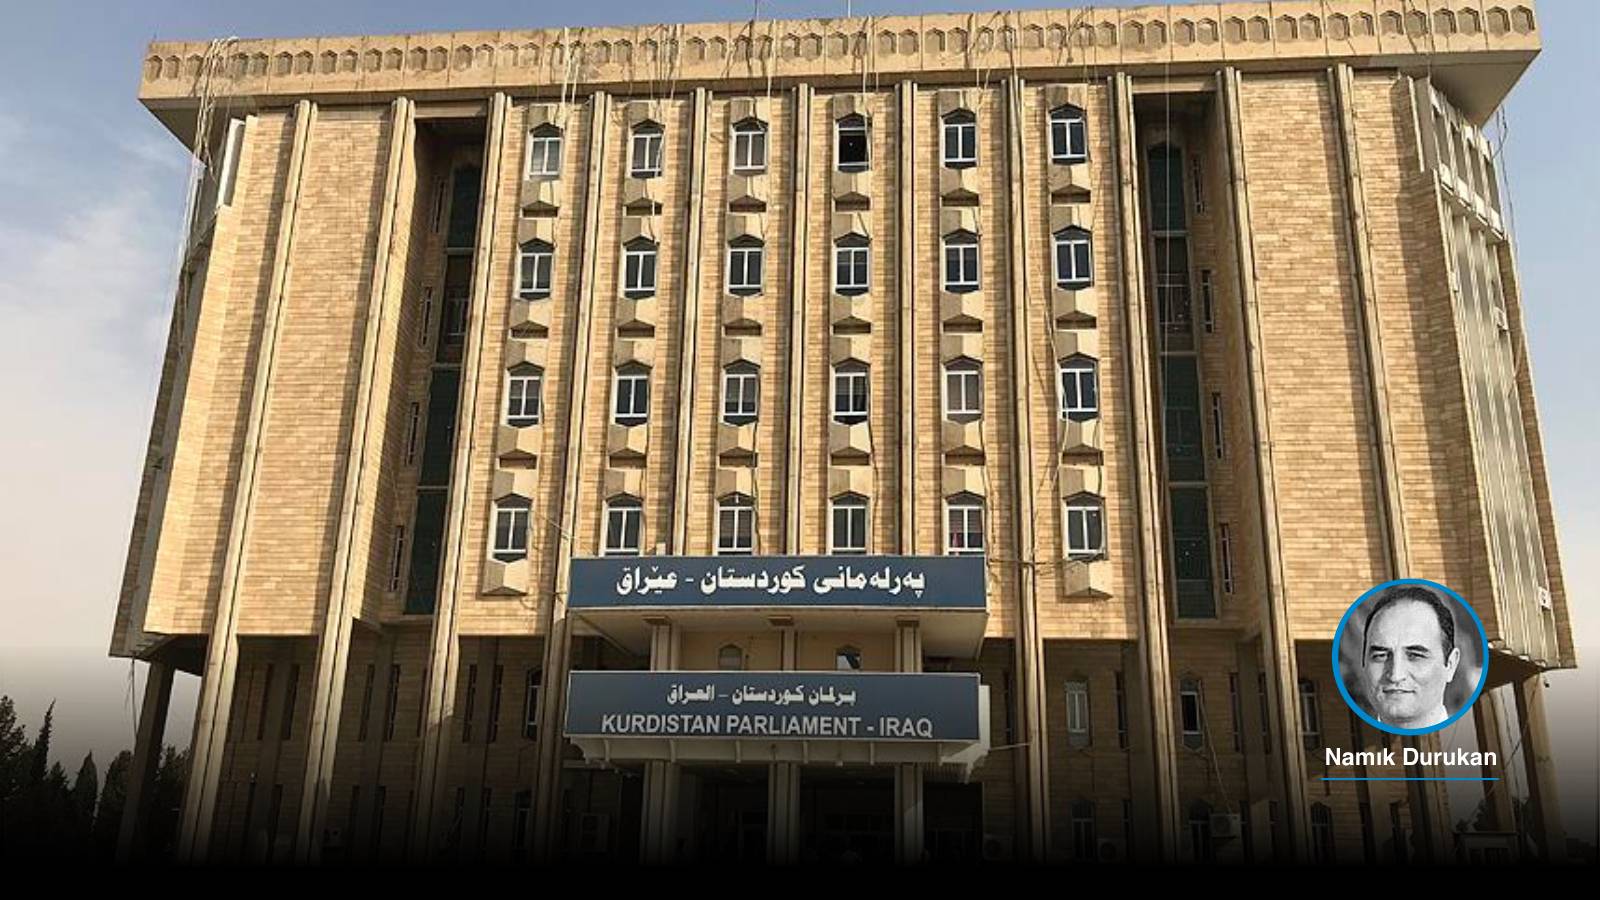 Kuzey Irak’ta yönetim krizi | Federal Mahkeme, azınlık kotasını kaldırdı, KDP seçimleri boykot etti